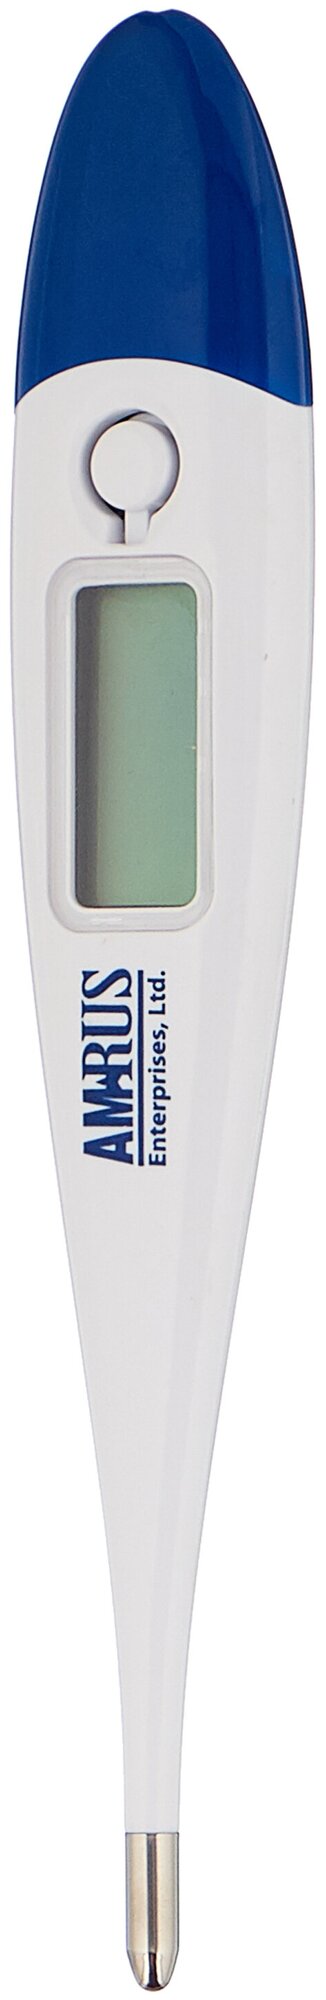 Термометр Amrus AMDT-10